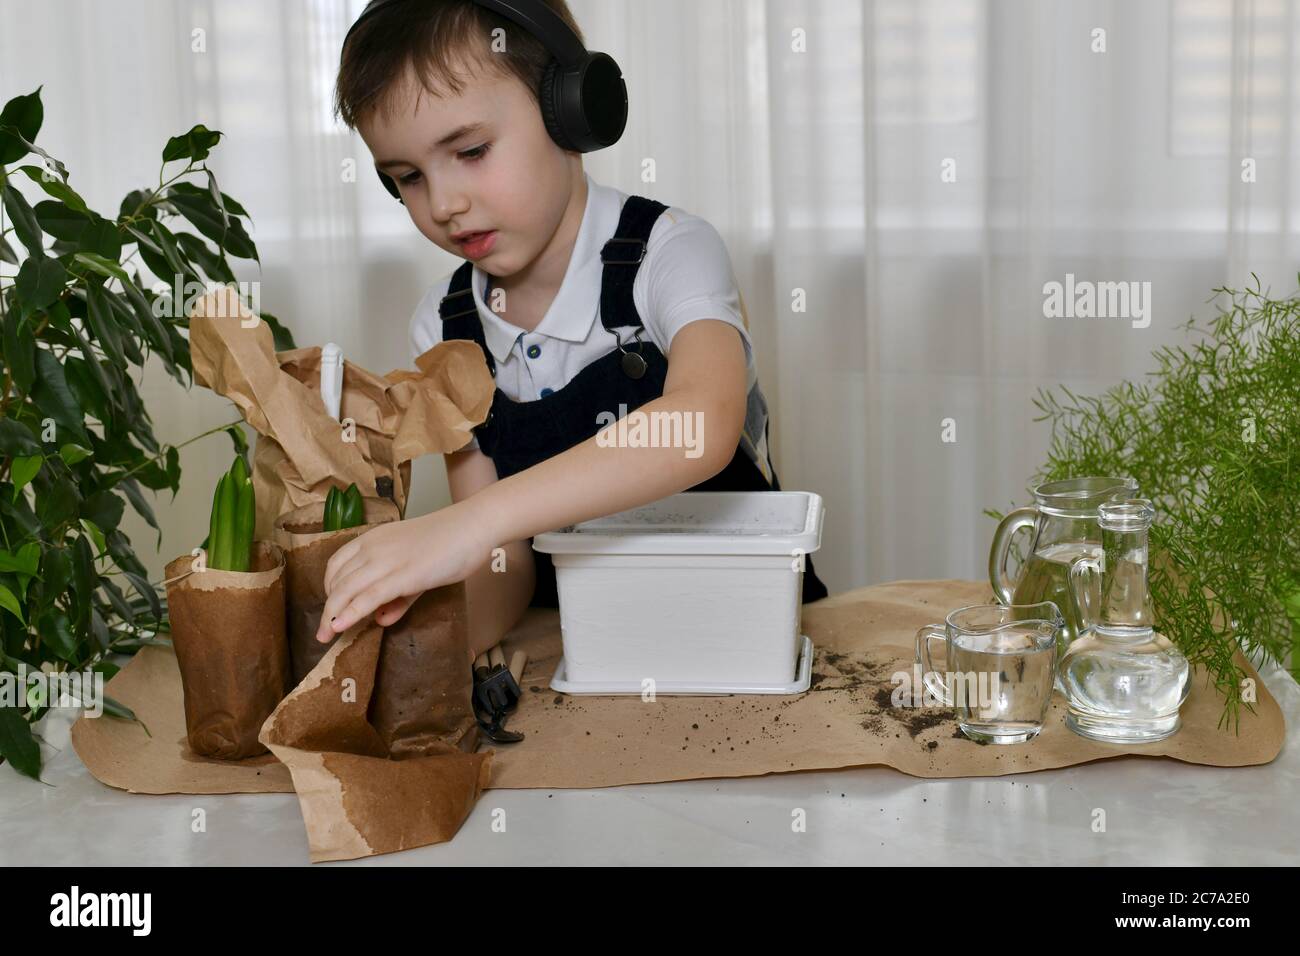 Der Junge ist mit der Pflanzung von Hyazinthen beschäftigt. Handflächen wickeln Papierbehälter mit bauchigen Sämlinge Blumen vorsichtig aus. Stockfoto